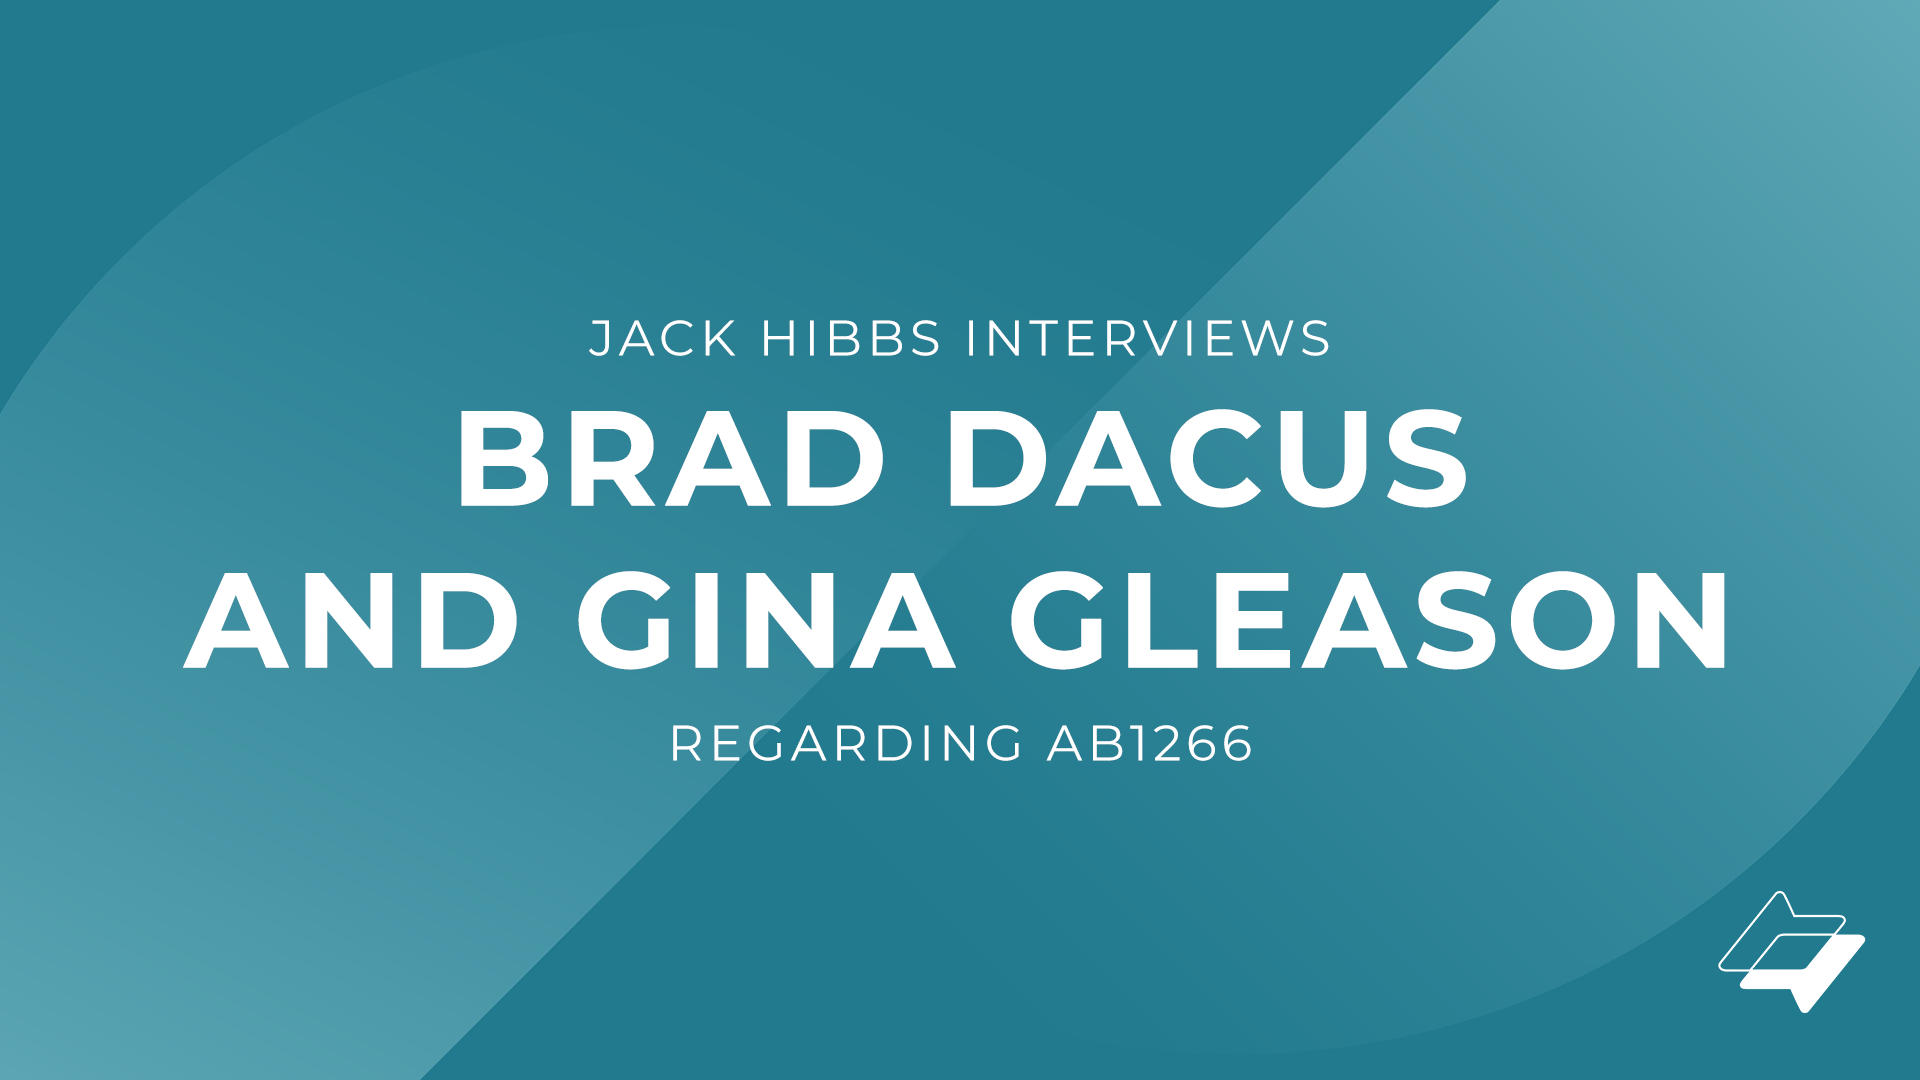 Jack Hibbs interviews Brad Dacus and Gina Gleason regarding AB1266